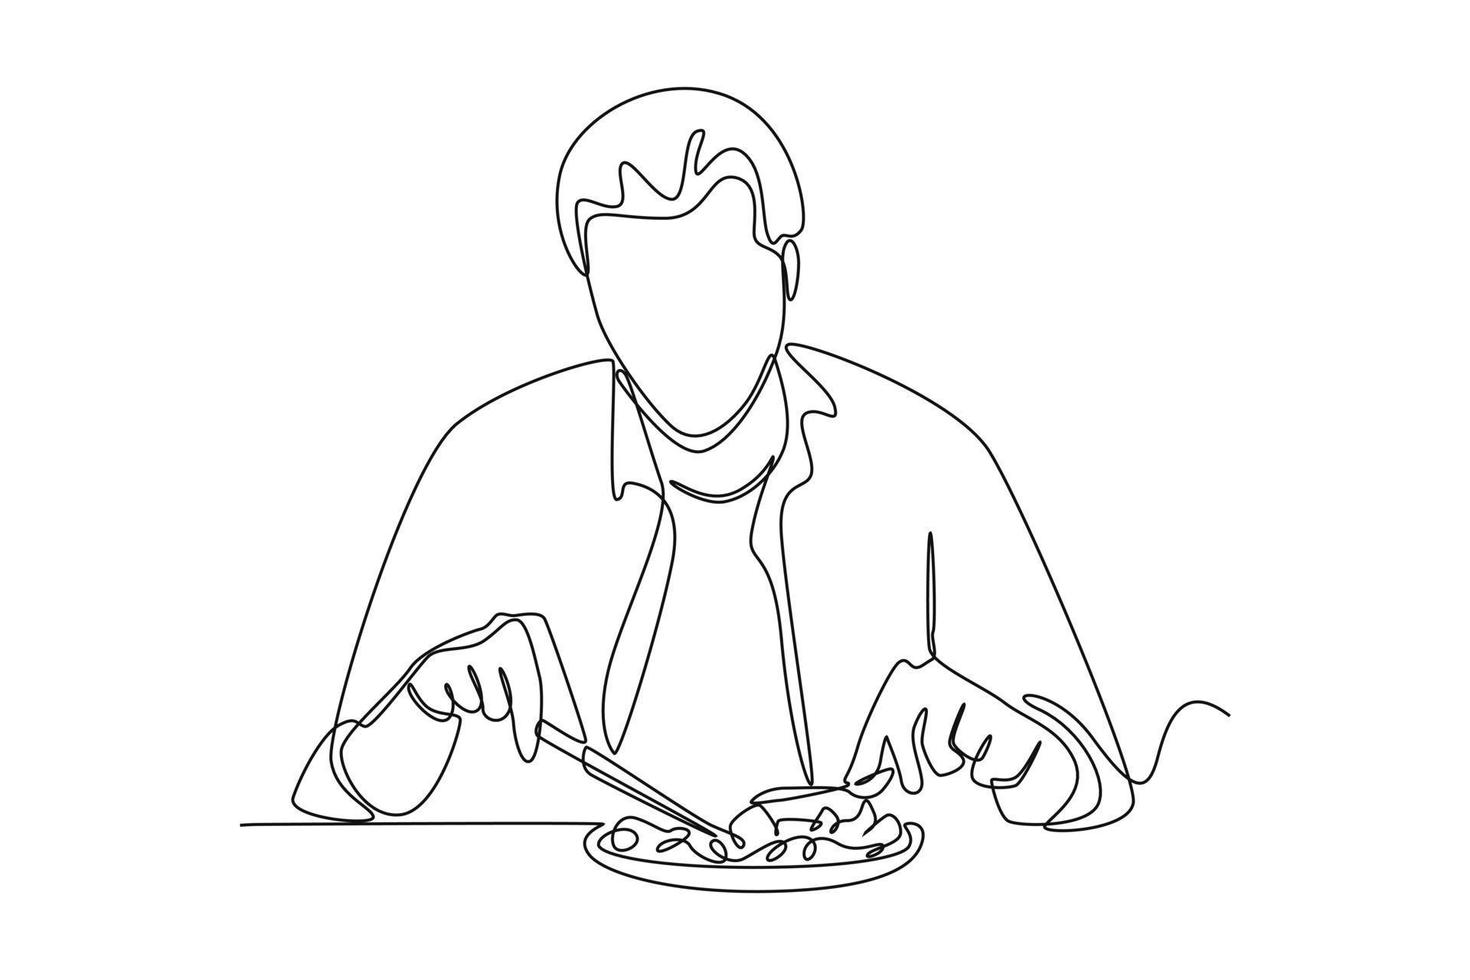 single een lijn tekening zakenman aan het eten gezond lunch. gezondheidszorg Bij kantoor concept. doorlopend lijn trek ontwerp grafisch vector illustratie.